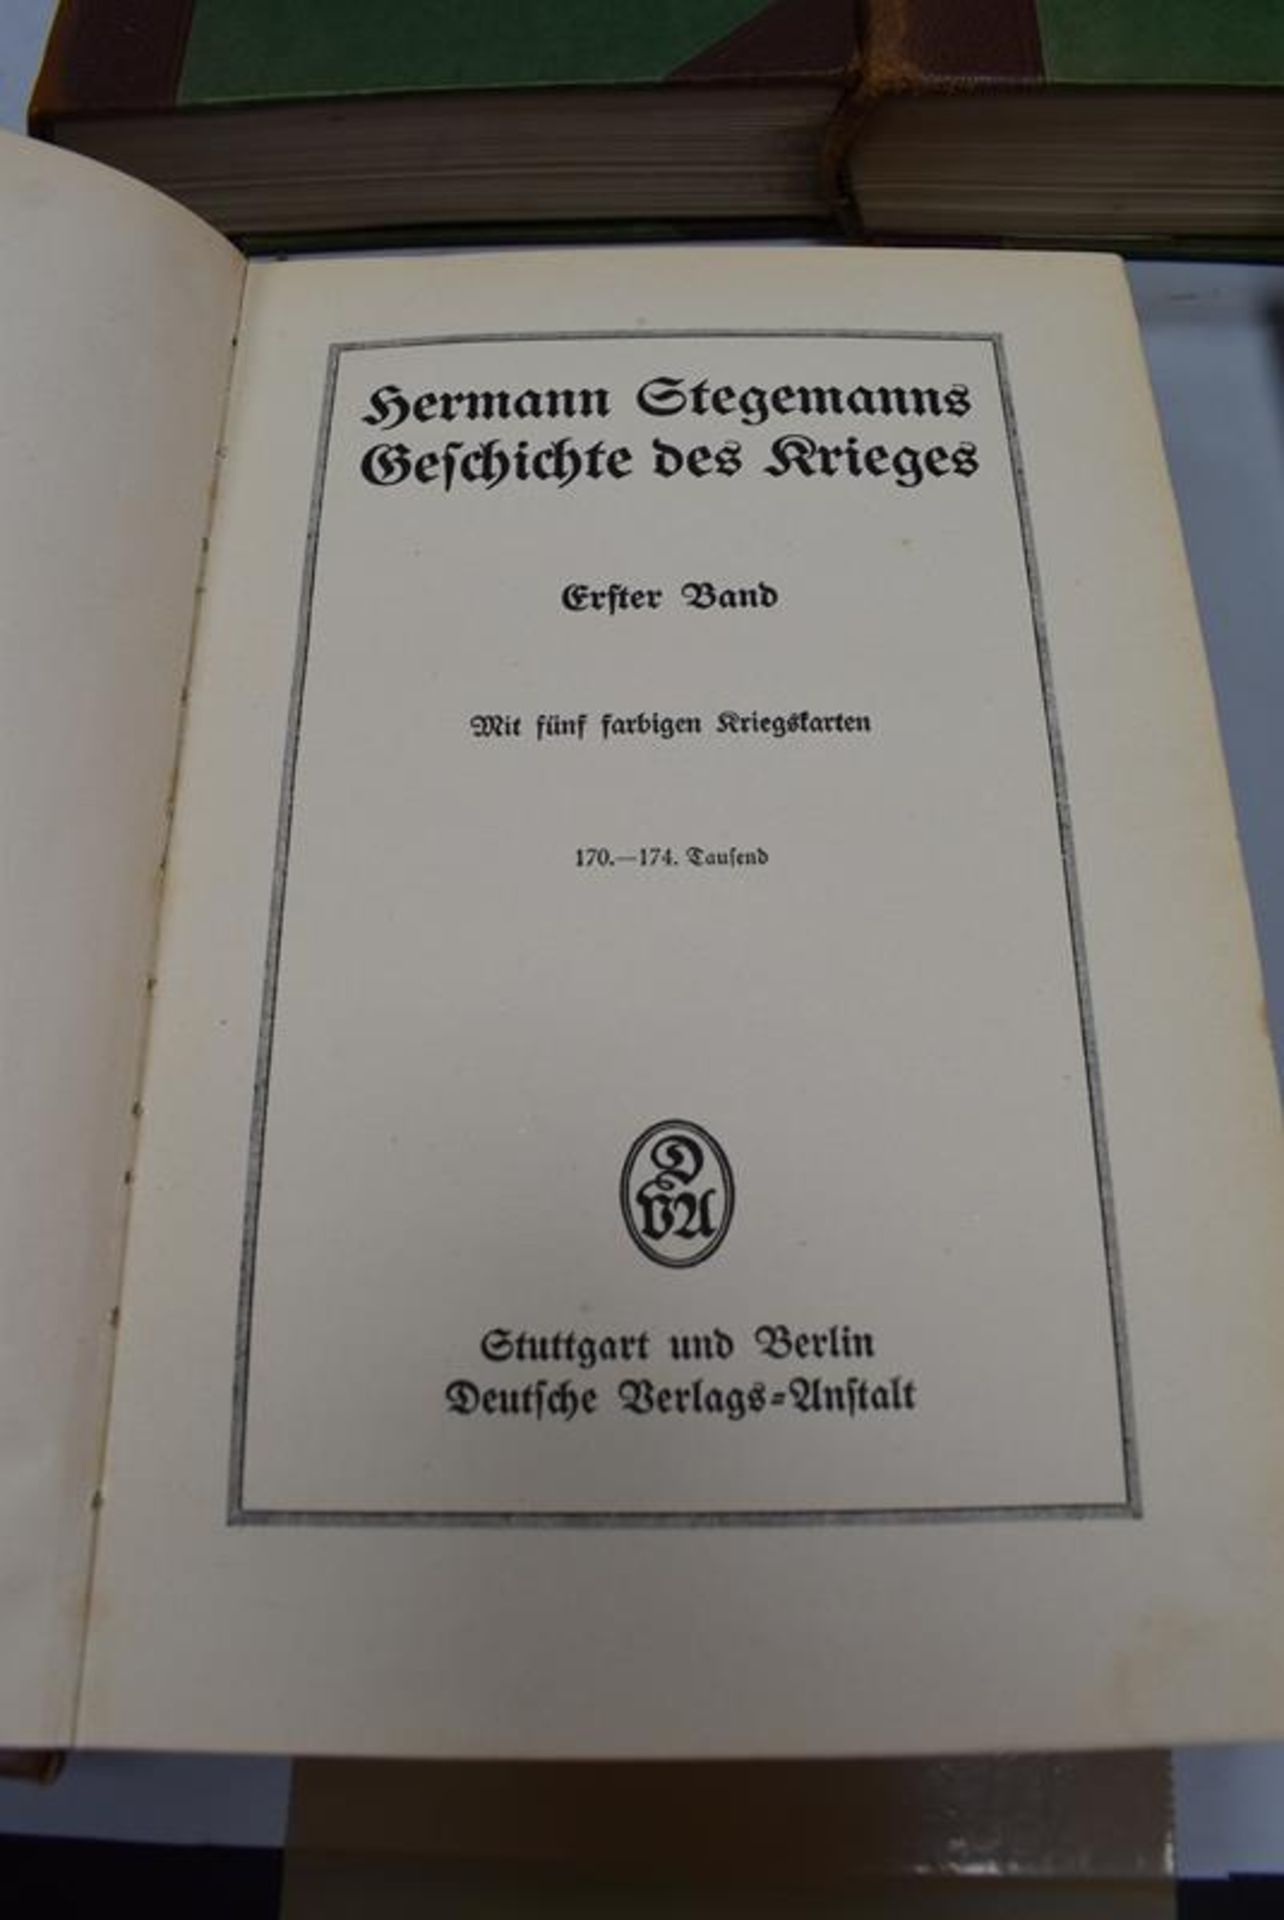 Hermann Stegemanns Geschichte des KriegesMindestpreis 150Bezeichnung Hermann Stegemanns Geschichte - Bild 3 aus 3